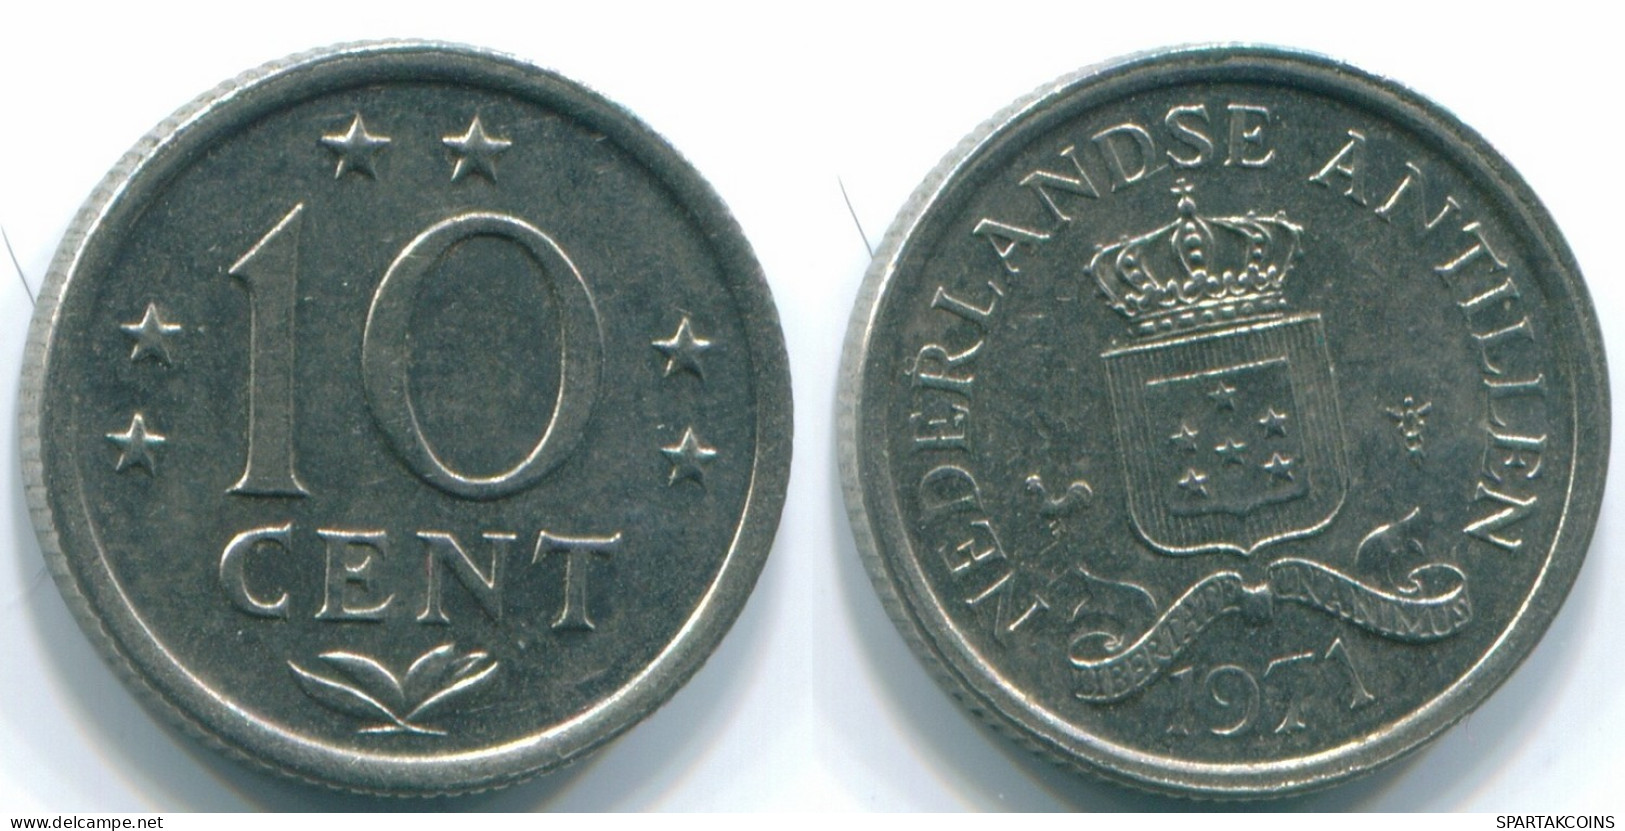 10 CENTS 1971 NIEDERLÄNDISCHE ANTILLEN Nickel Koloniale Münze #S13449.D.A - Niederländische Antillen